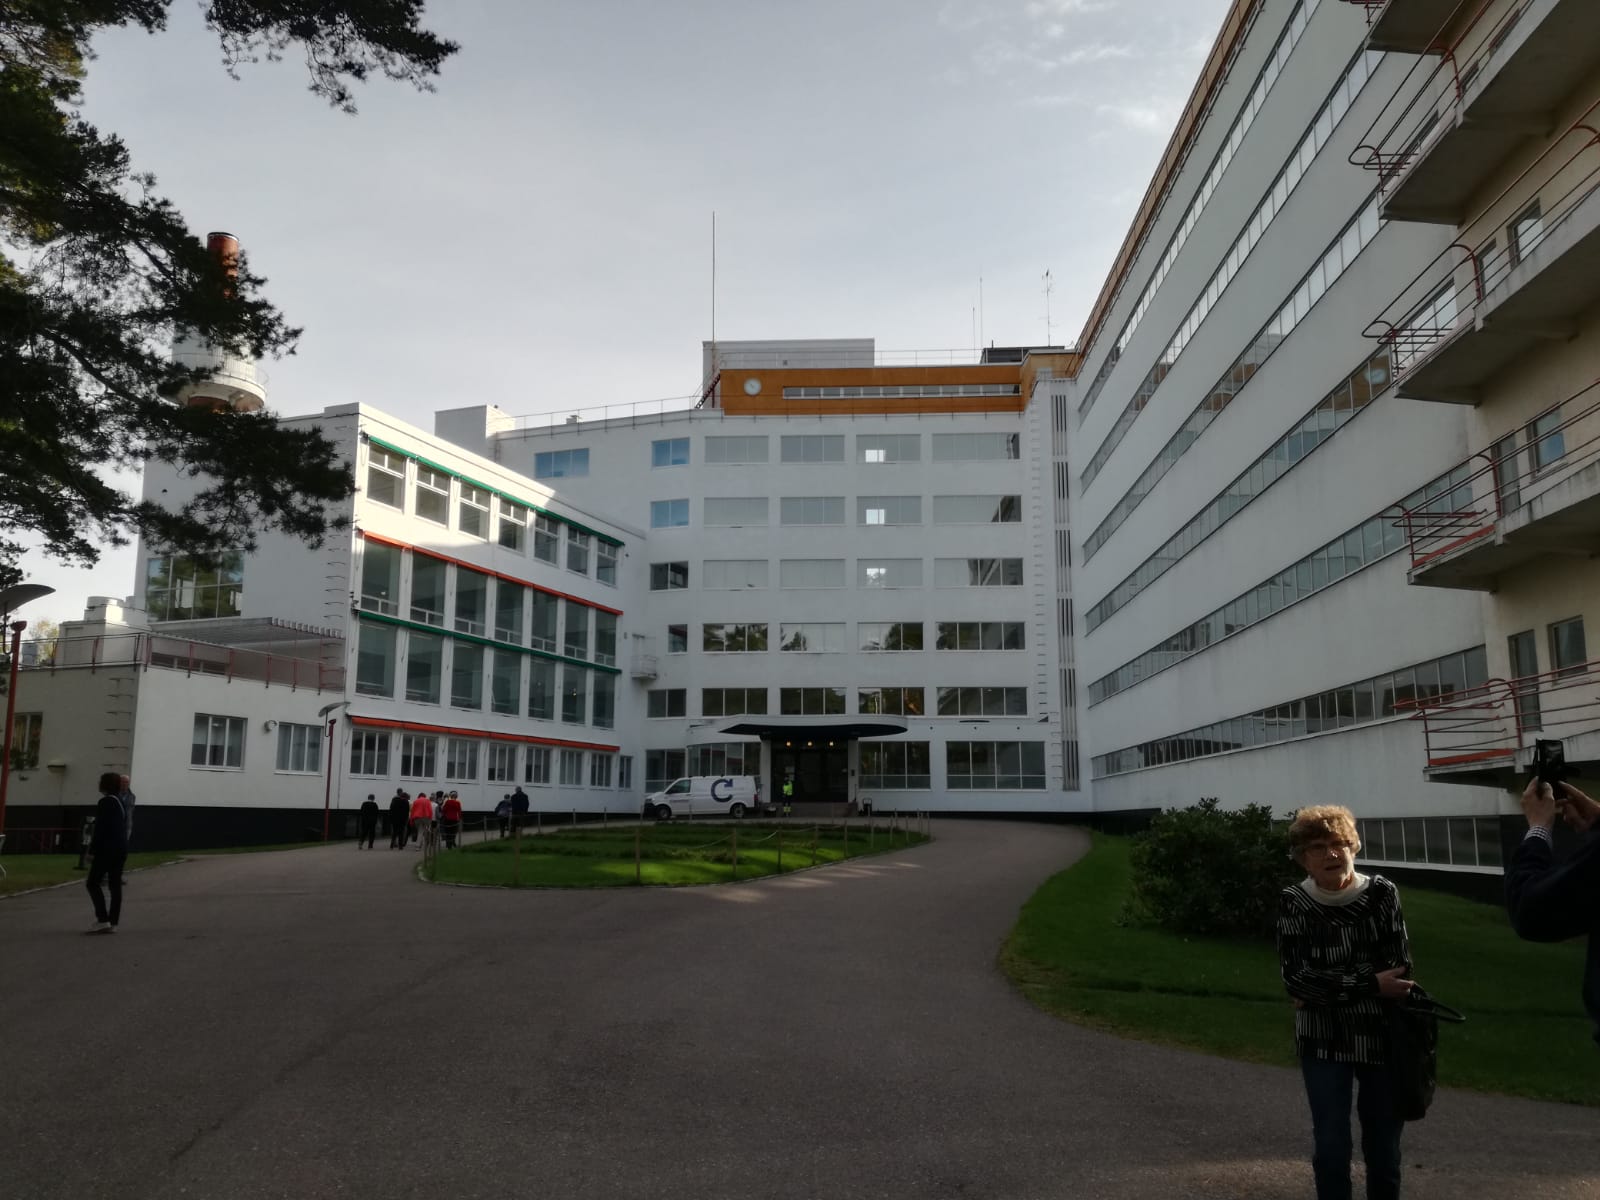 Syysretken kohde oli Alvar Aallon suunnittelema Paimion Sairaala